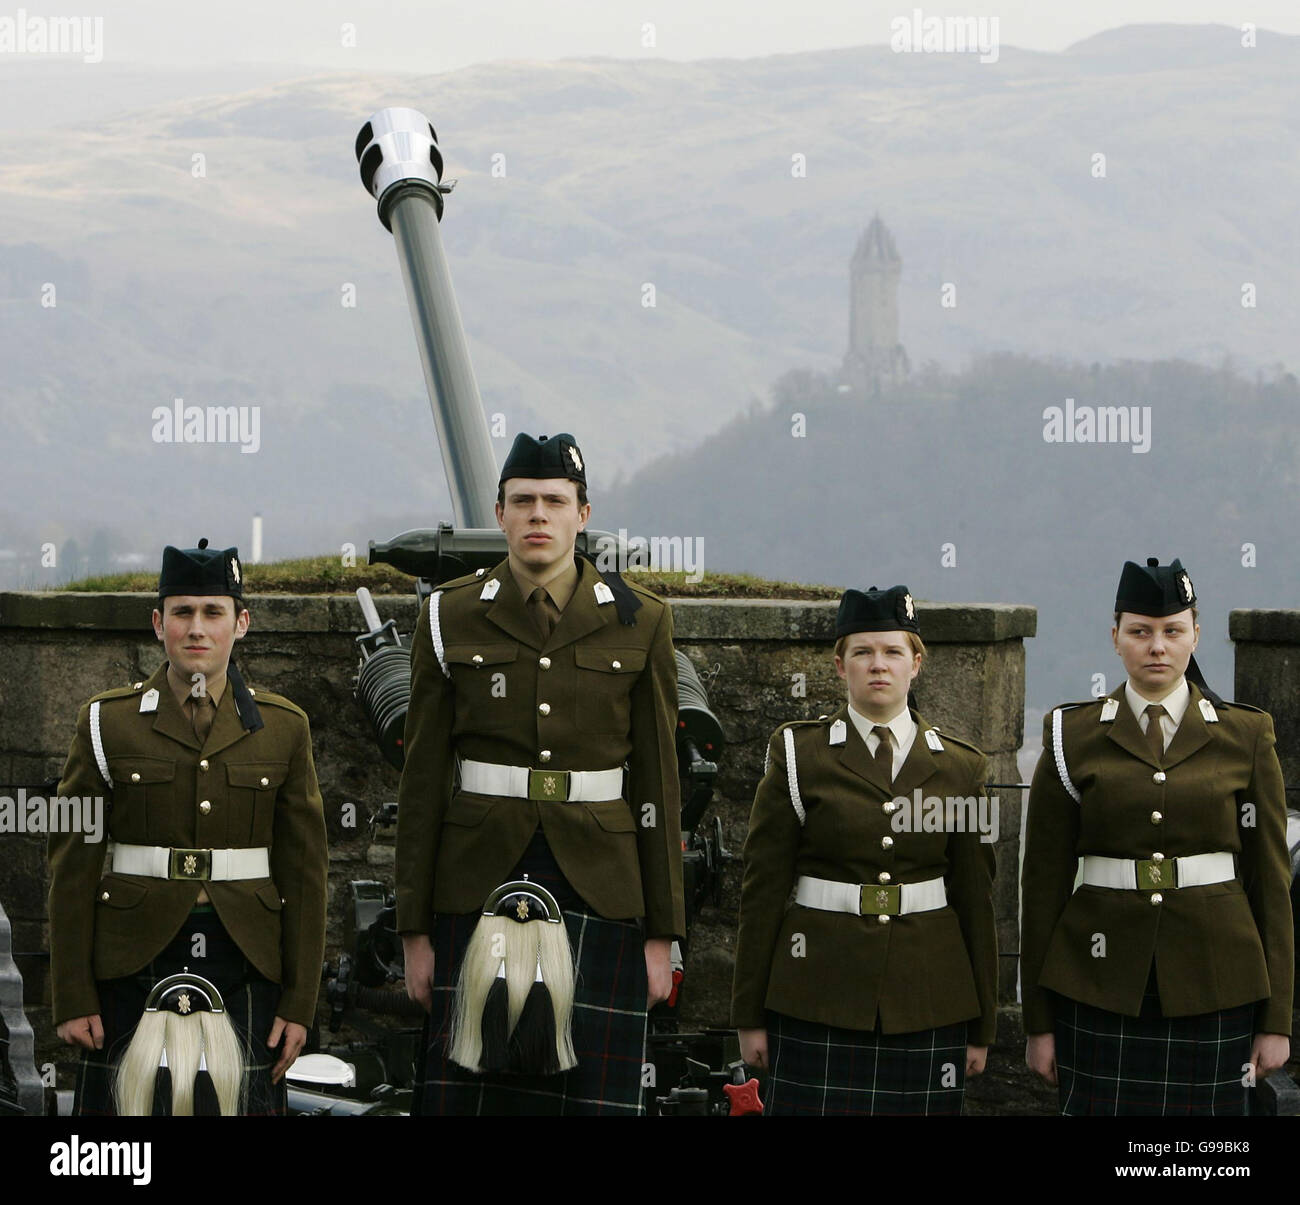 Les artilleurs de la Strathclyde Glasgow et universités Officers Training Corps après avoir tiré une salve de vingt-et-un au château de Stirling avec le Monument William Wallace dans l'arrière-plan pour célébrer le 80e anniversaire de la Reine. Vendredi 21 Avril 2006 Banque D'Images